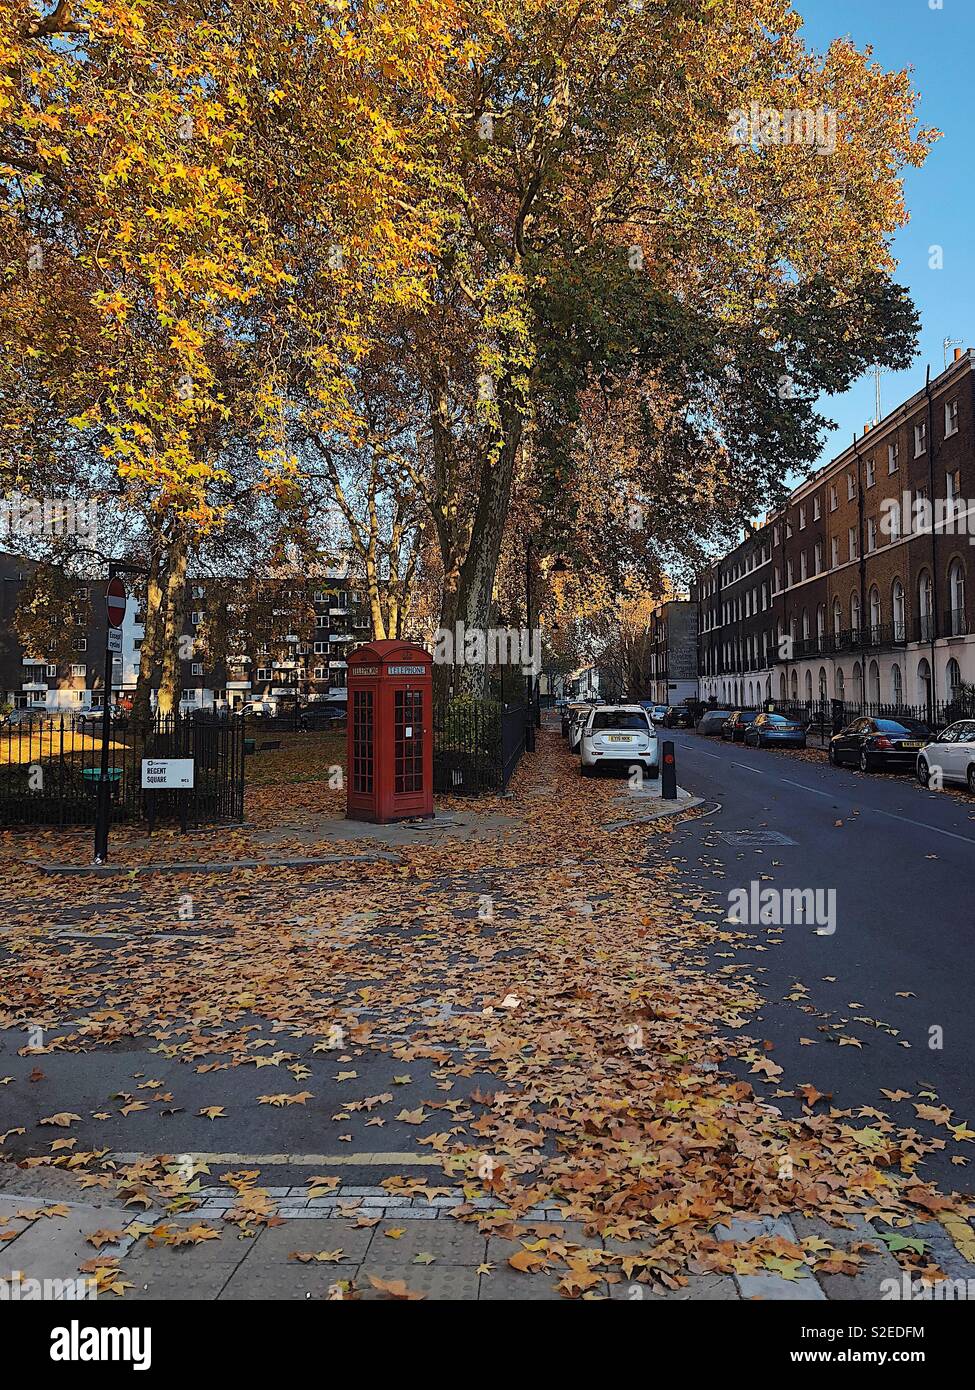 La scène de rue d'automne avec téléphone rouge fort, un tapis d'auburn, d'orange et de feuilles dorées, un parc de loisirs et d'une rangée de logements. Les voitures en stationnement de la route Banque D'Images